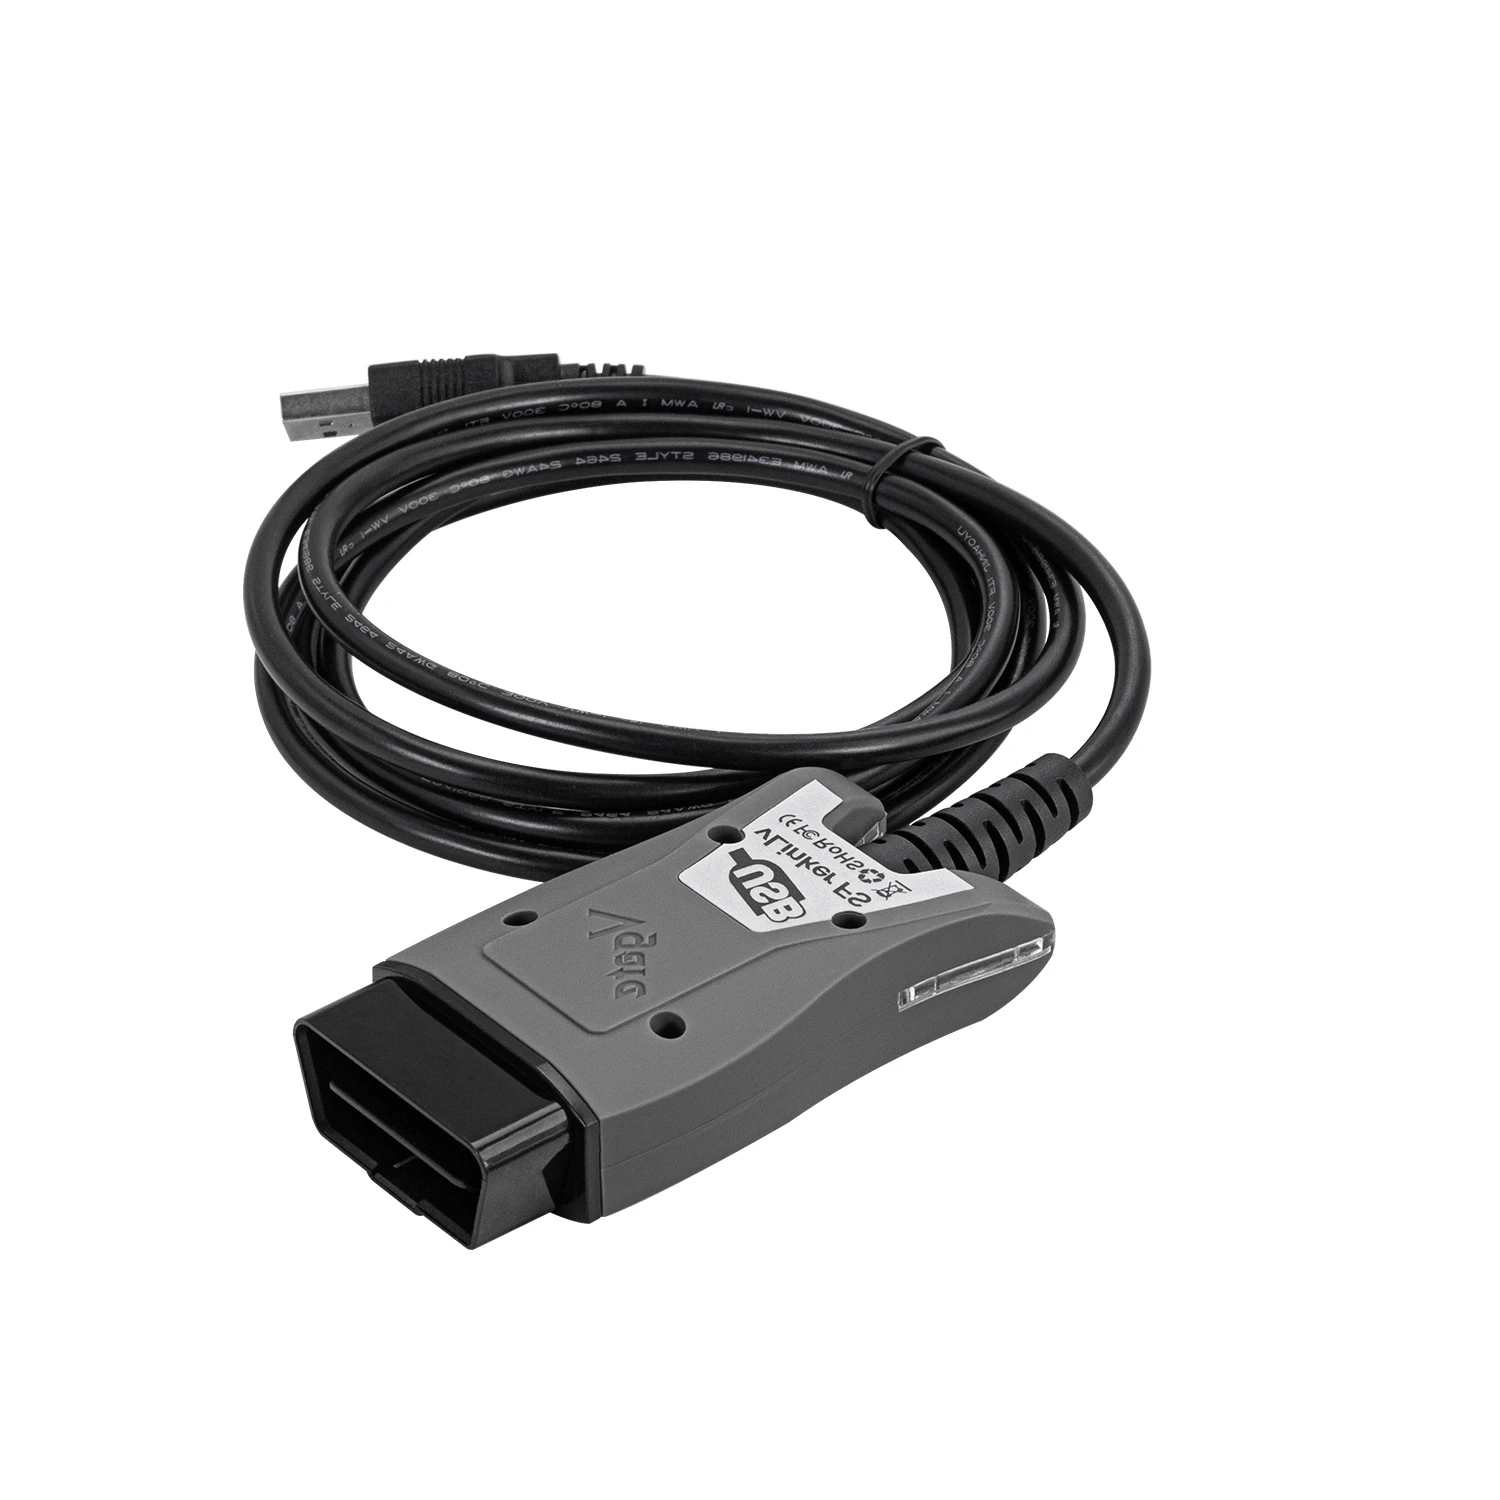 

Vgate vLinker FS USB For Ford FORScan ELM327 HS/MS-CAN OBD 2 OBD2 Car Diagnostic ELM 327 Scanner Interface Tools OBDII For Mazda